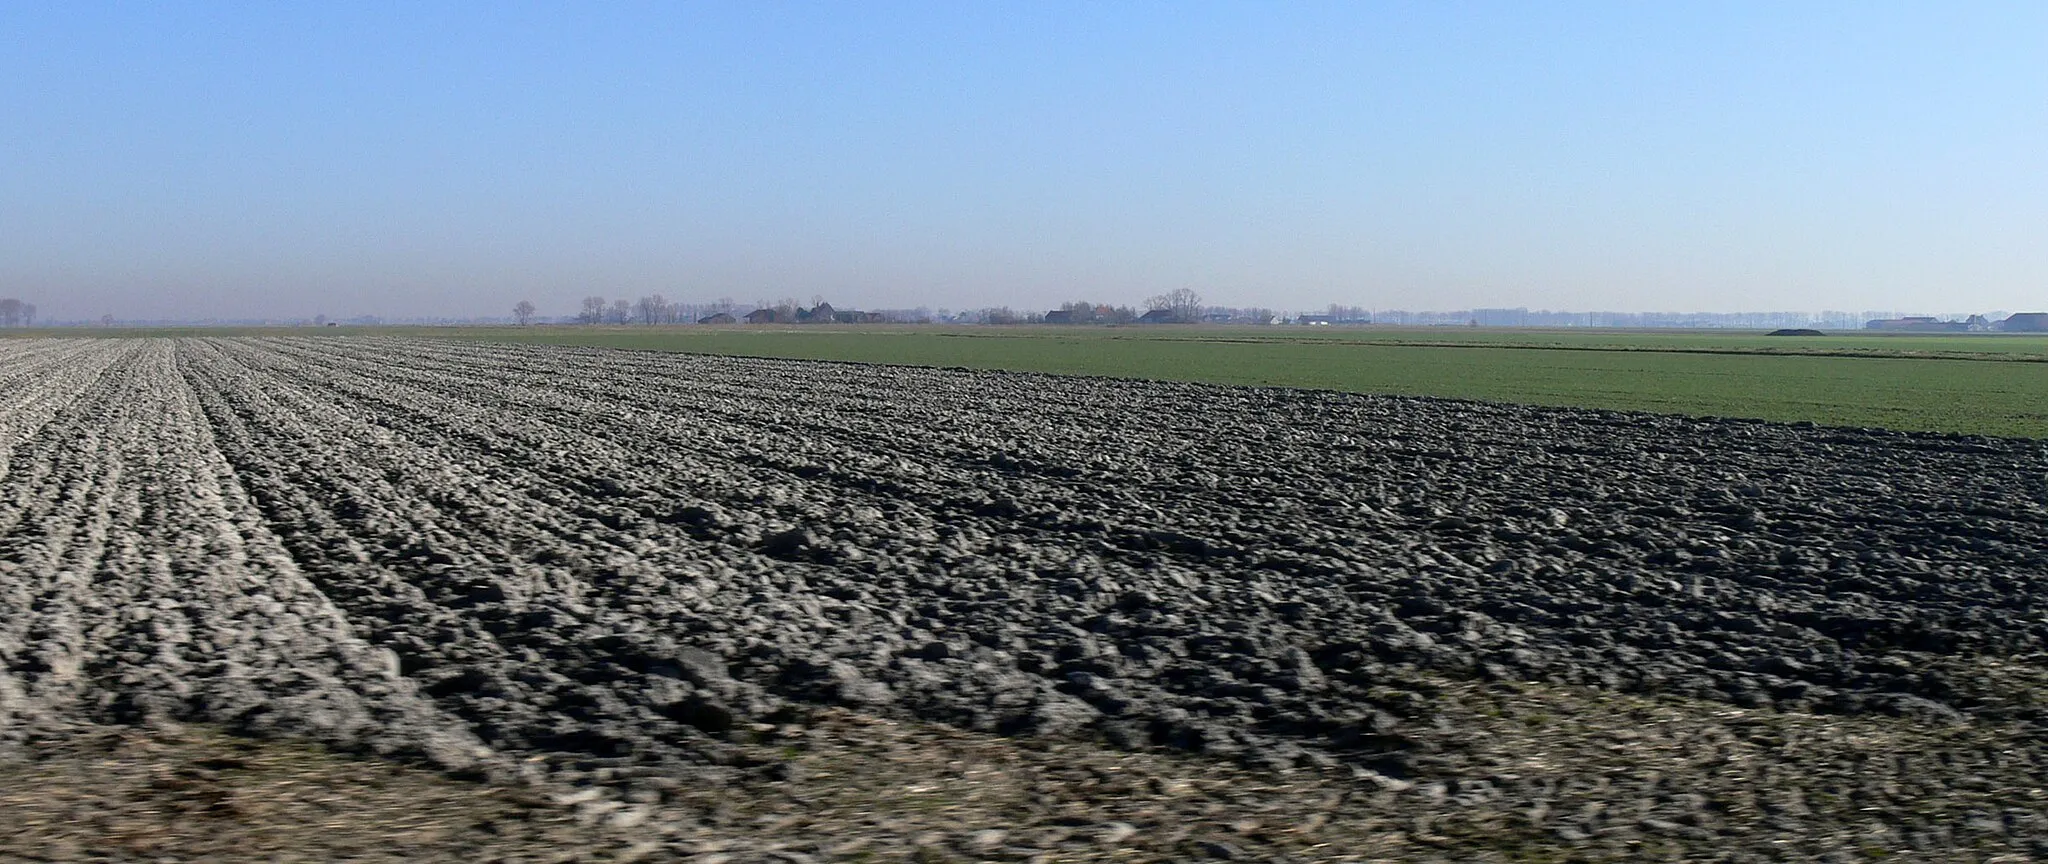 Photo showing: paysage poldérien des moëres, Flandres maritimes, côté français. Cette zone est aujourd'hui située à environ 2 m sous le niveau moyen de la mer. Jour de pic de pollution (noter l'horizon brunâtre).